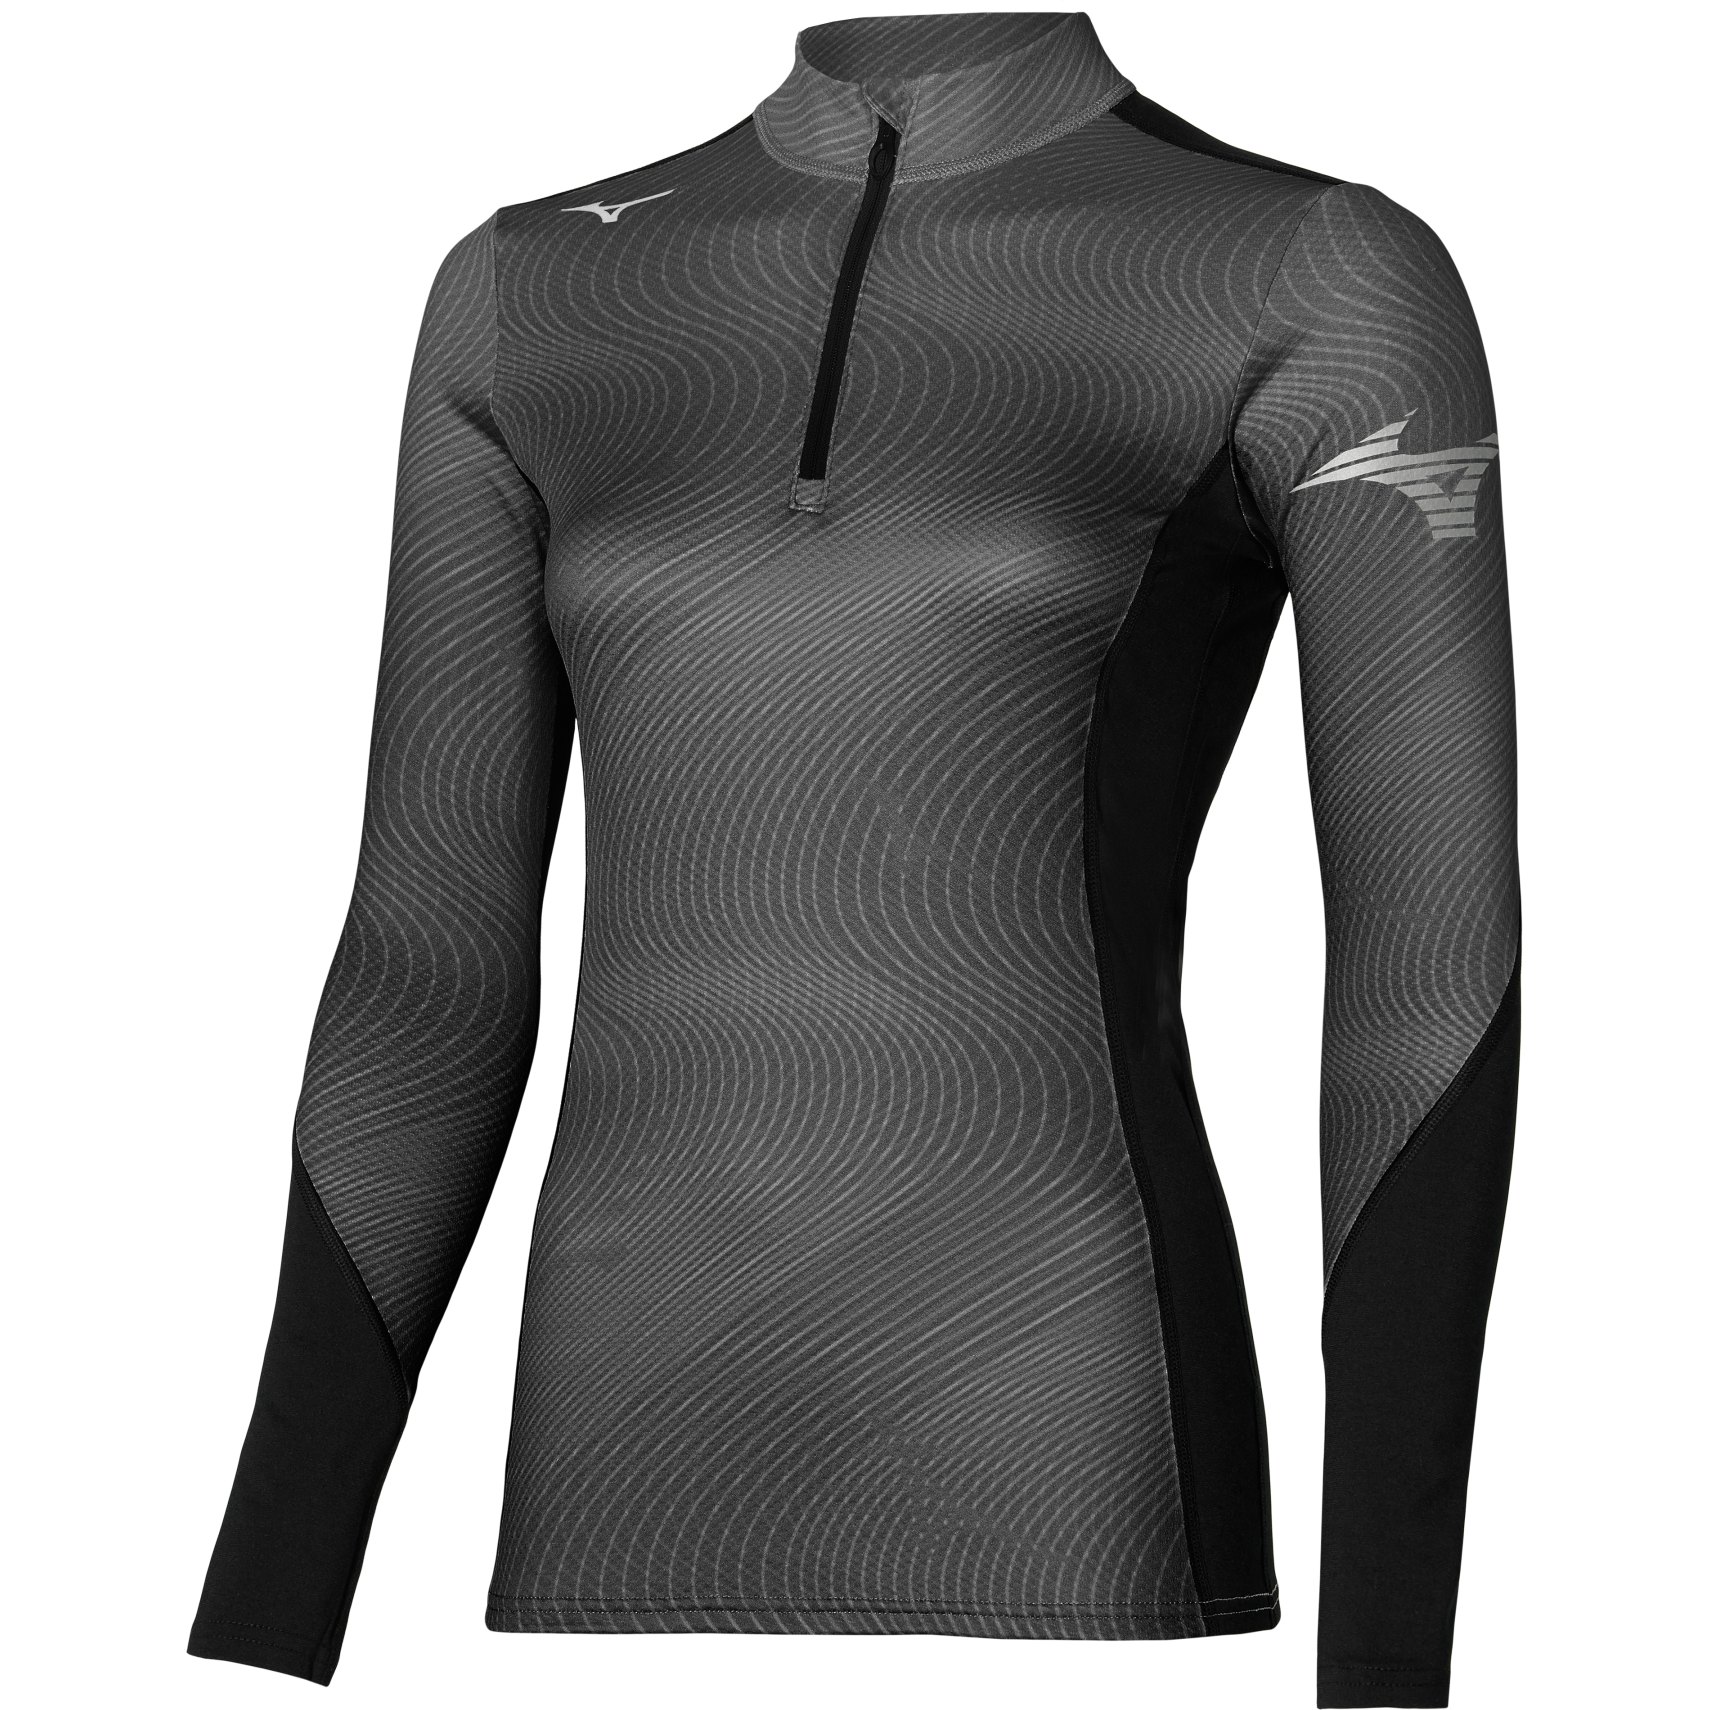 Produktbild von Mizuno Virtual Body G3 Half Zip Langarmshirt Damen - Schwarz